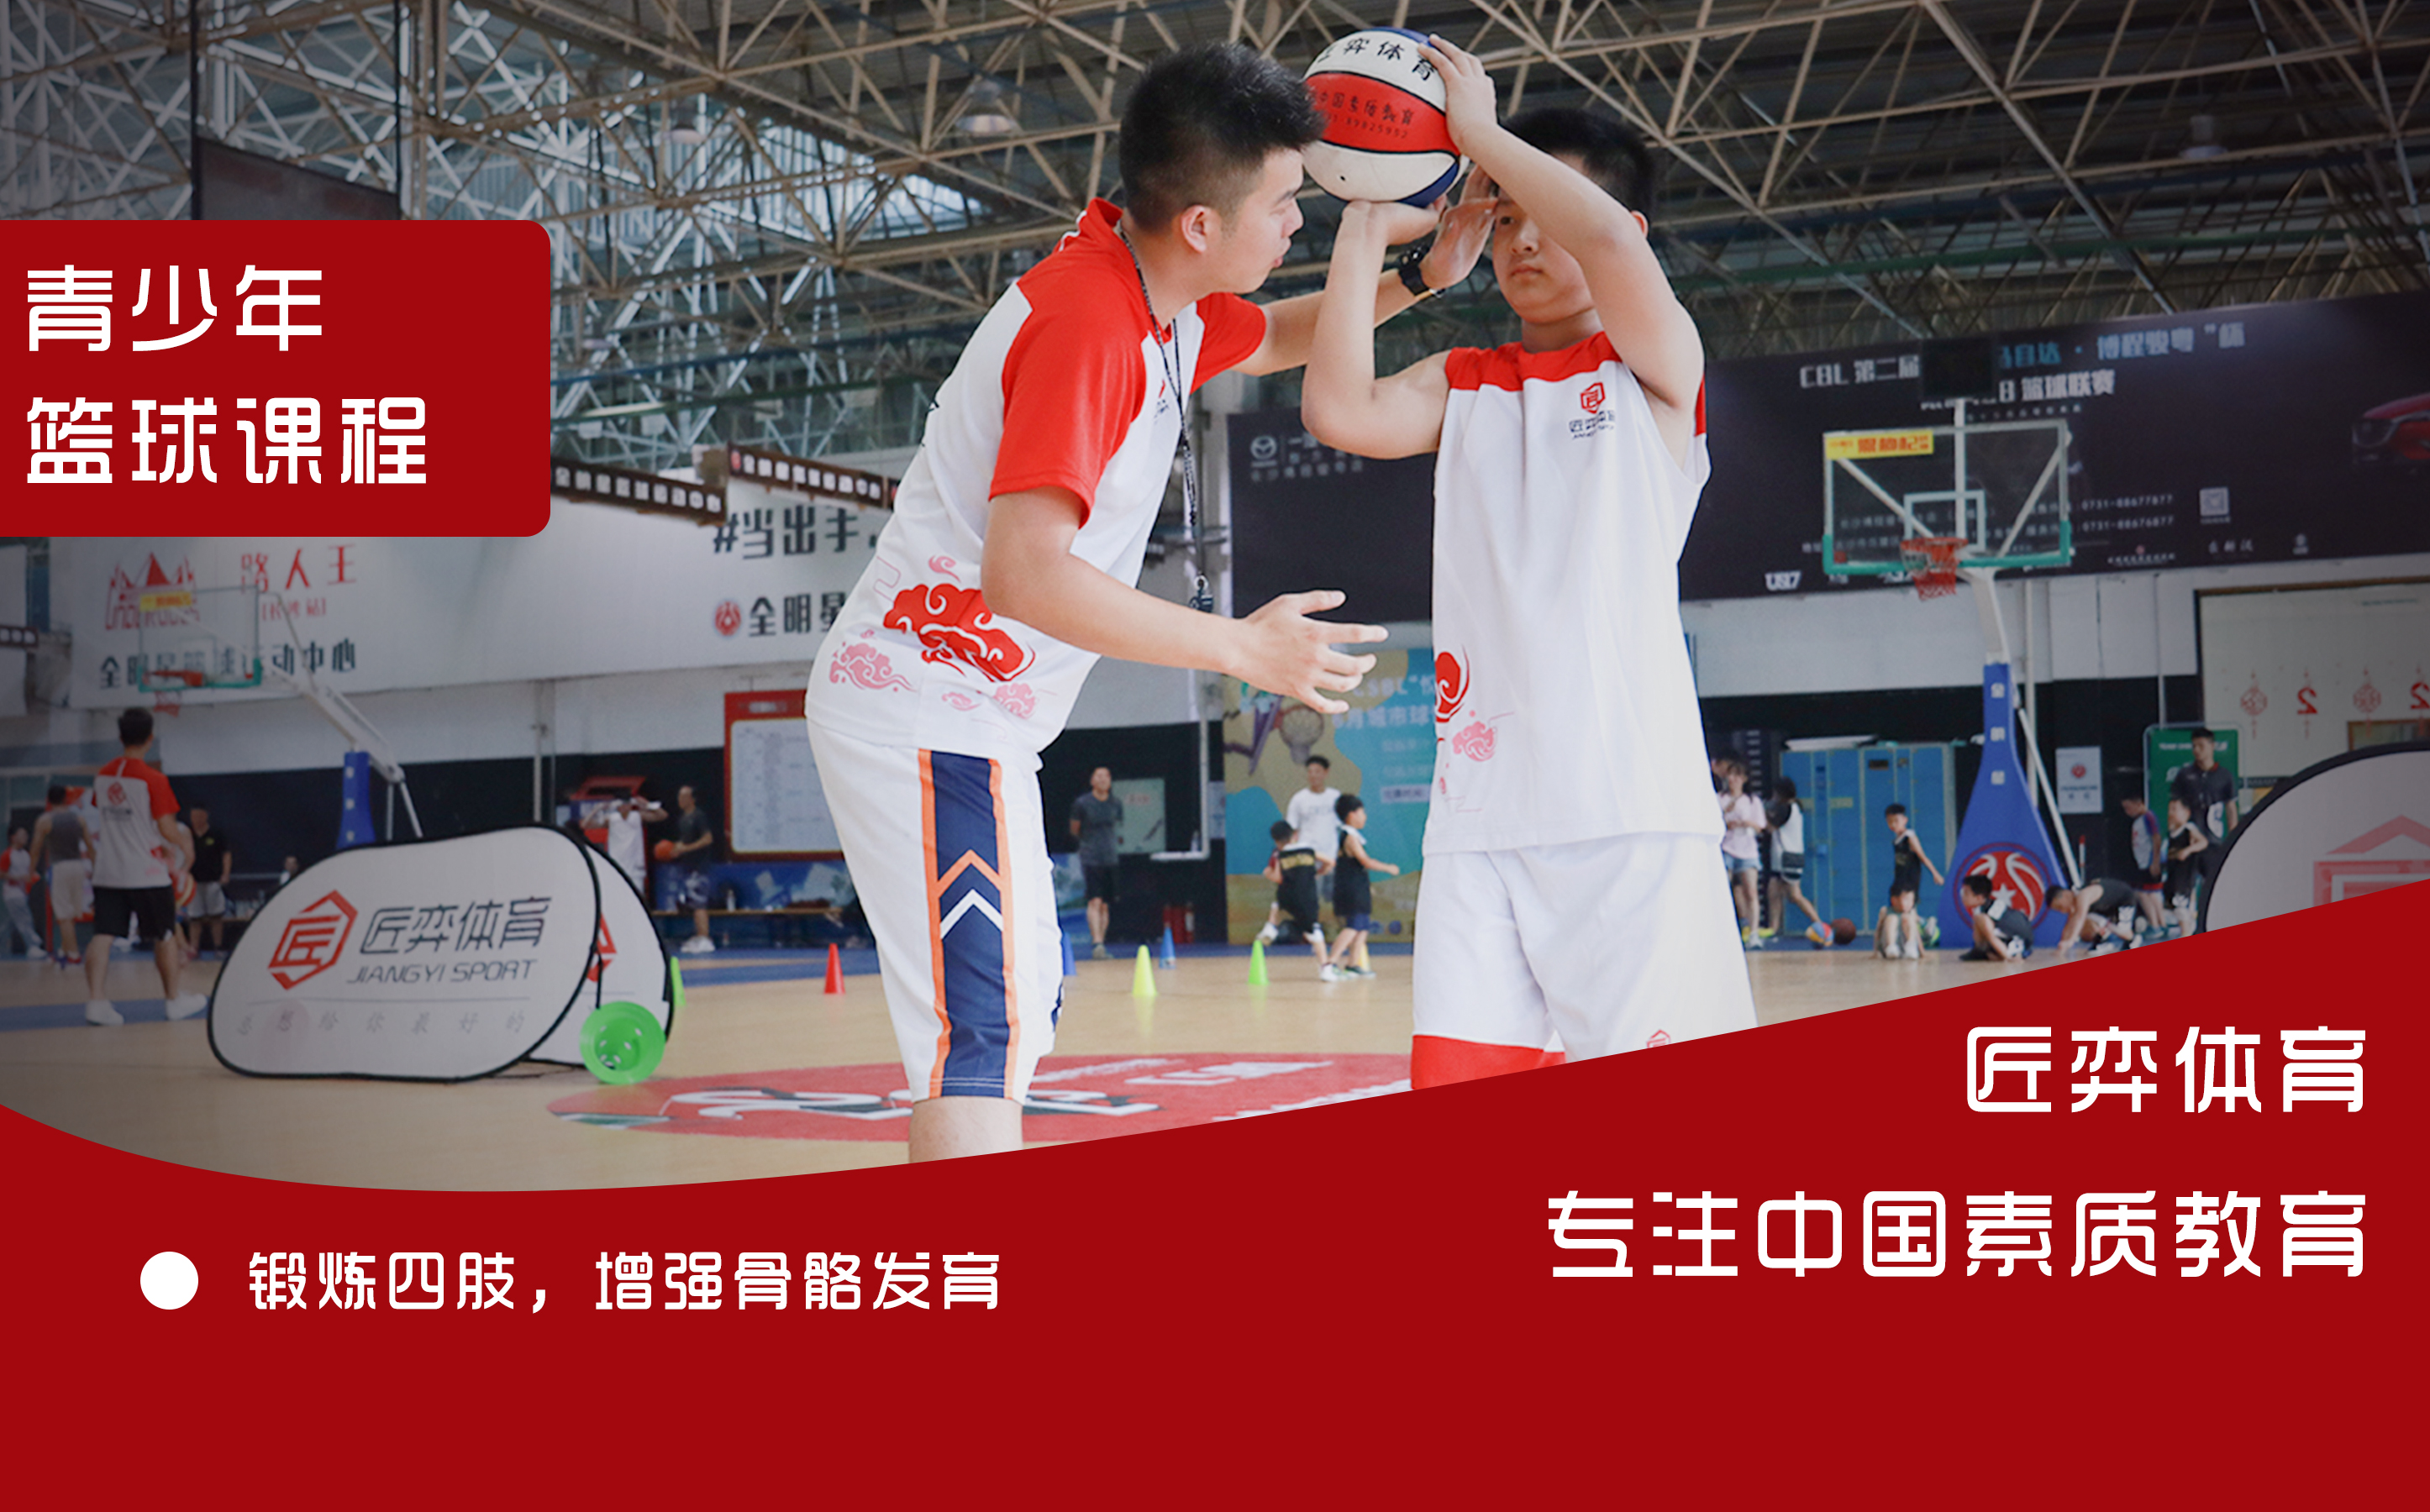 上海匠弈体育上海匠弈5-16岁青少年篮球培训课程图片